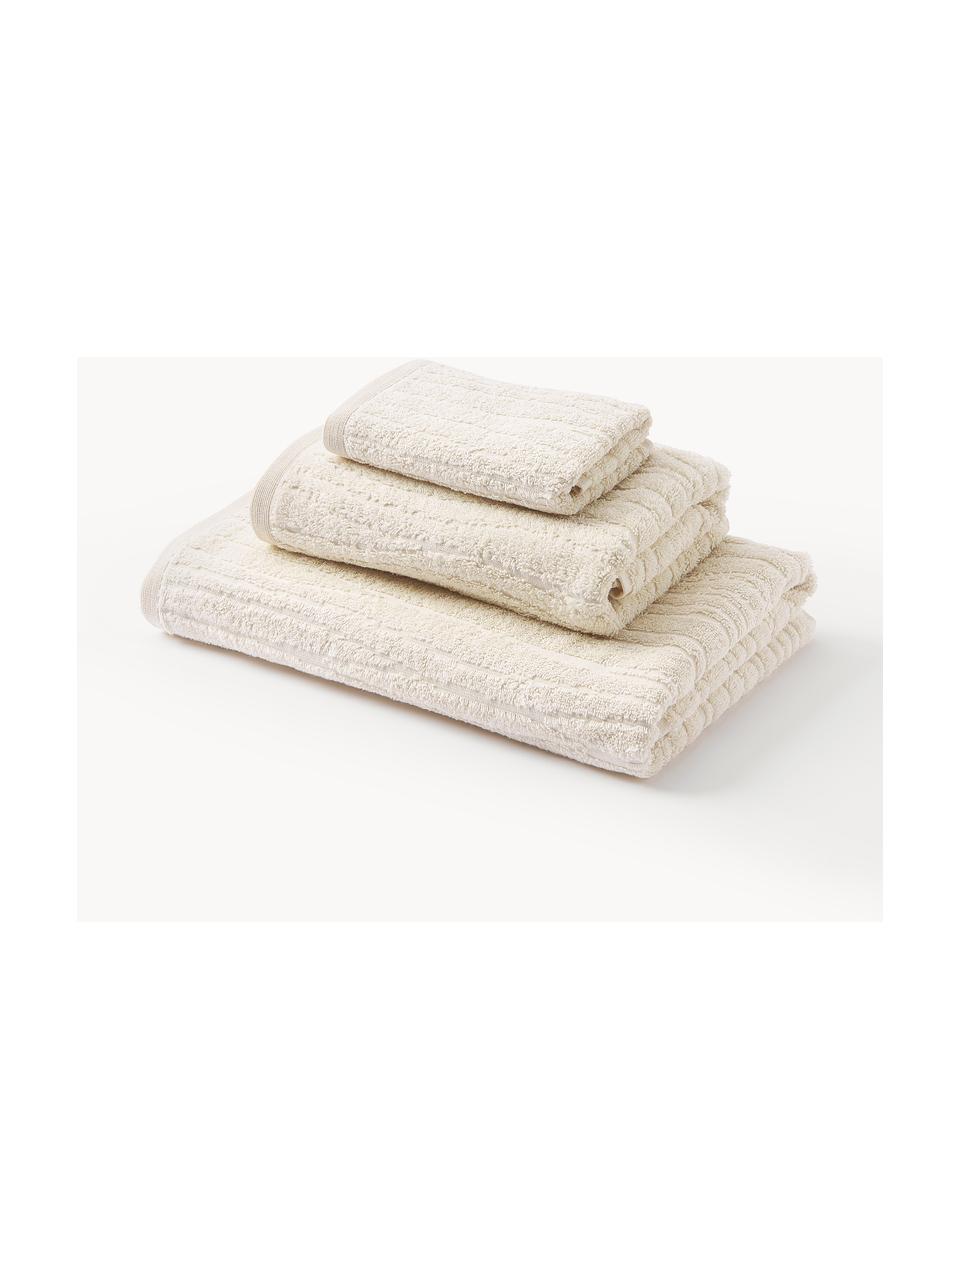 Sada ručníků z bavlny Audrina, různé velikosti sady, Světle béžová, Sada s různými velikostmi